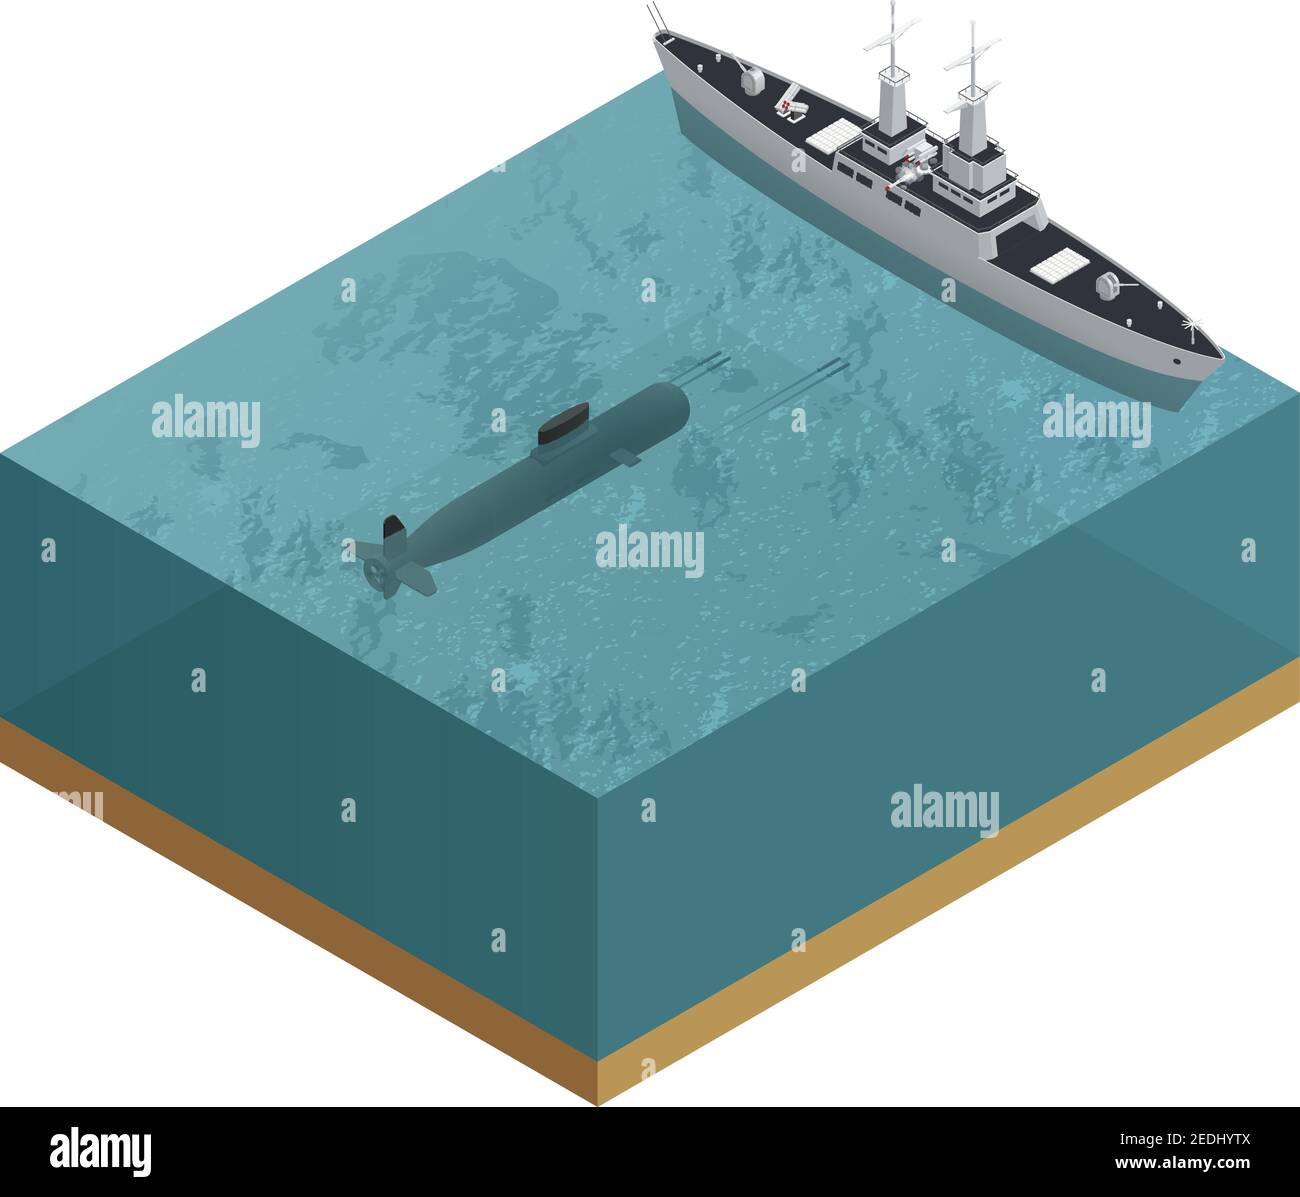 Composizione di imbarcazioni militari 3d isometriche con taglio di mare con un sommergibile e un'illustrazione vettoriale della barca Illustrazione Vettoriale